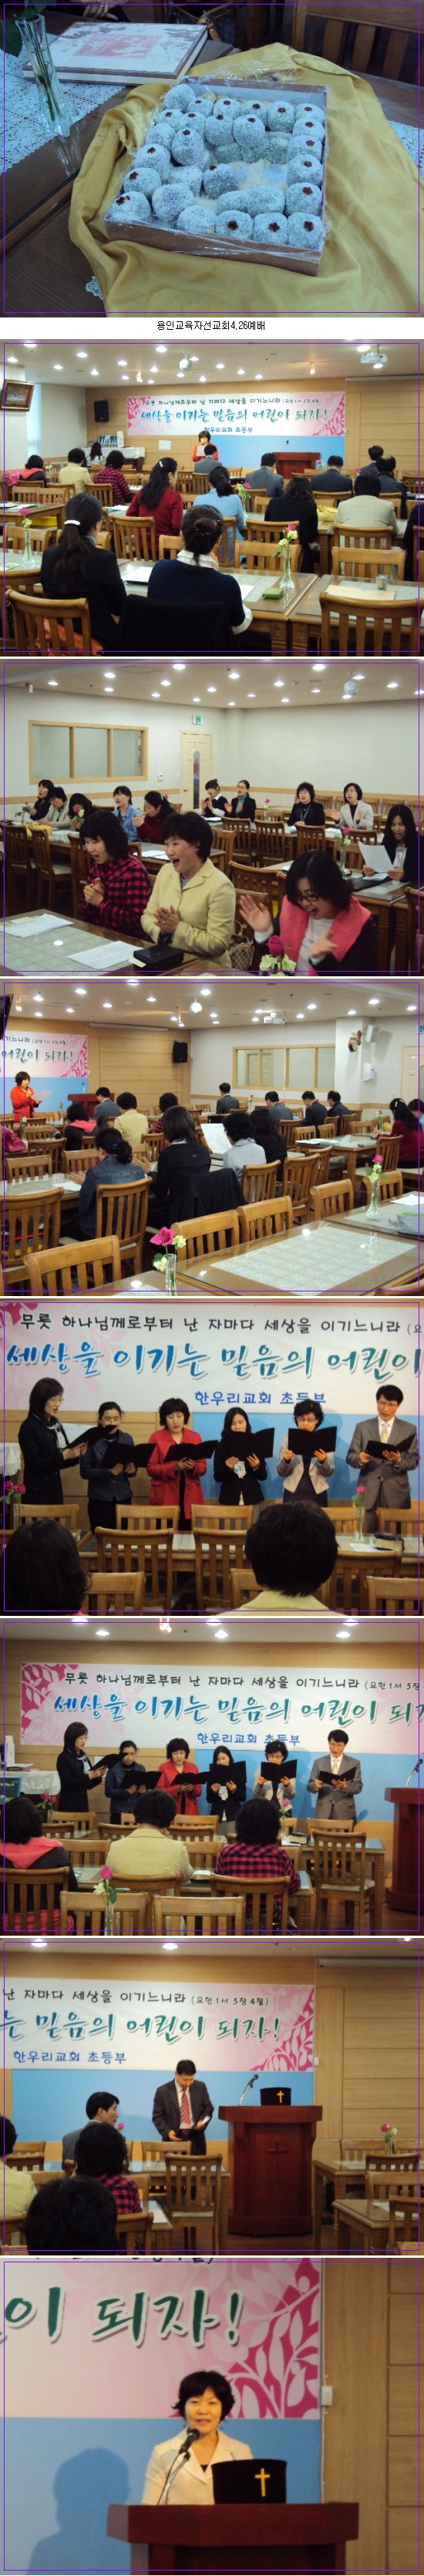 용인교육자 선교회 4월 예배